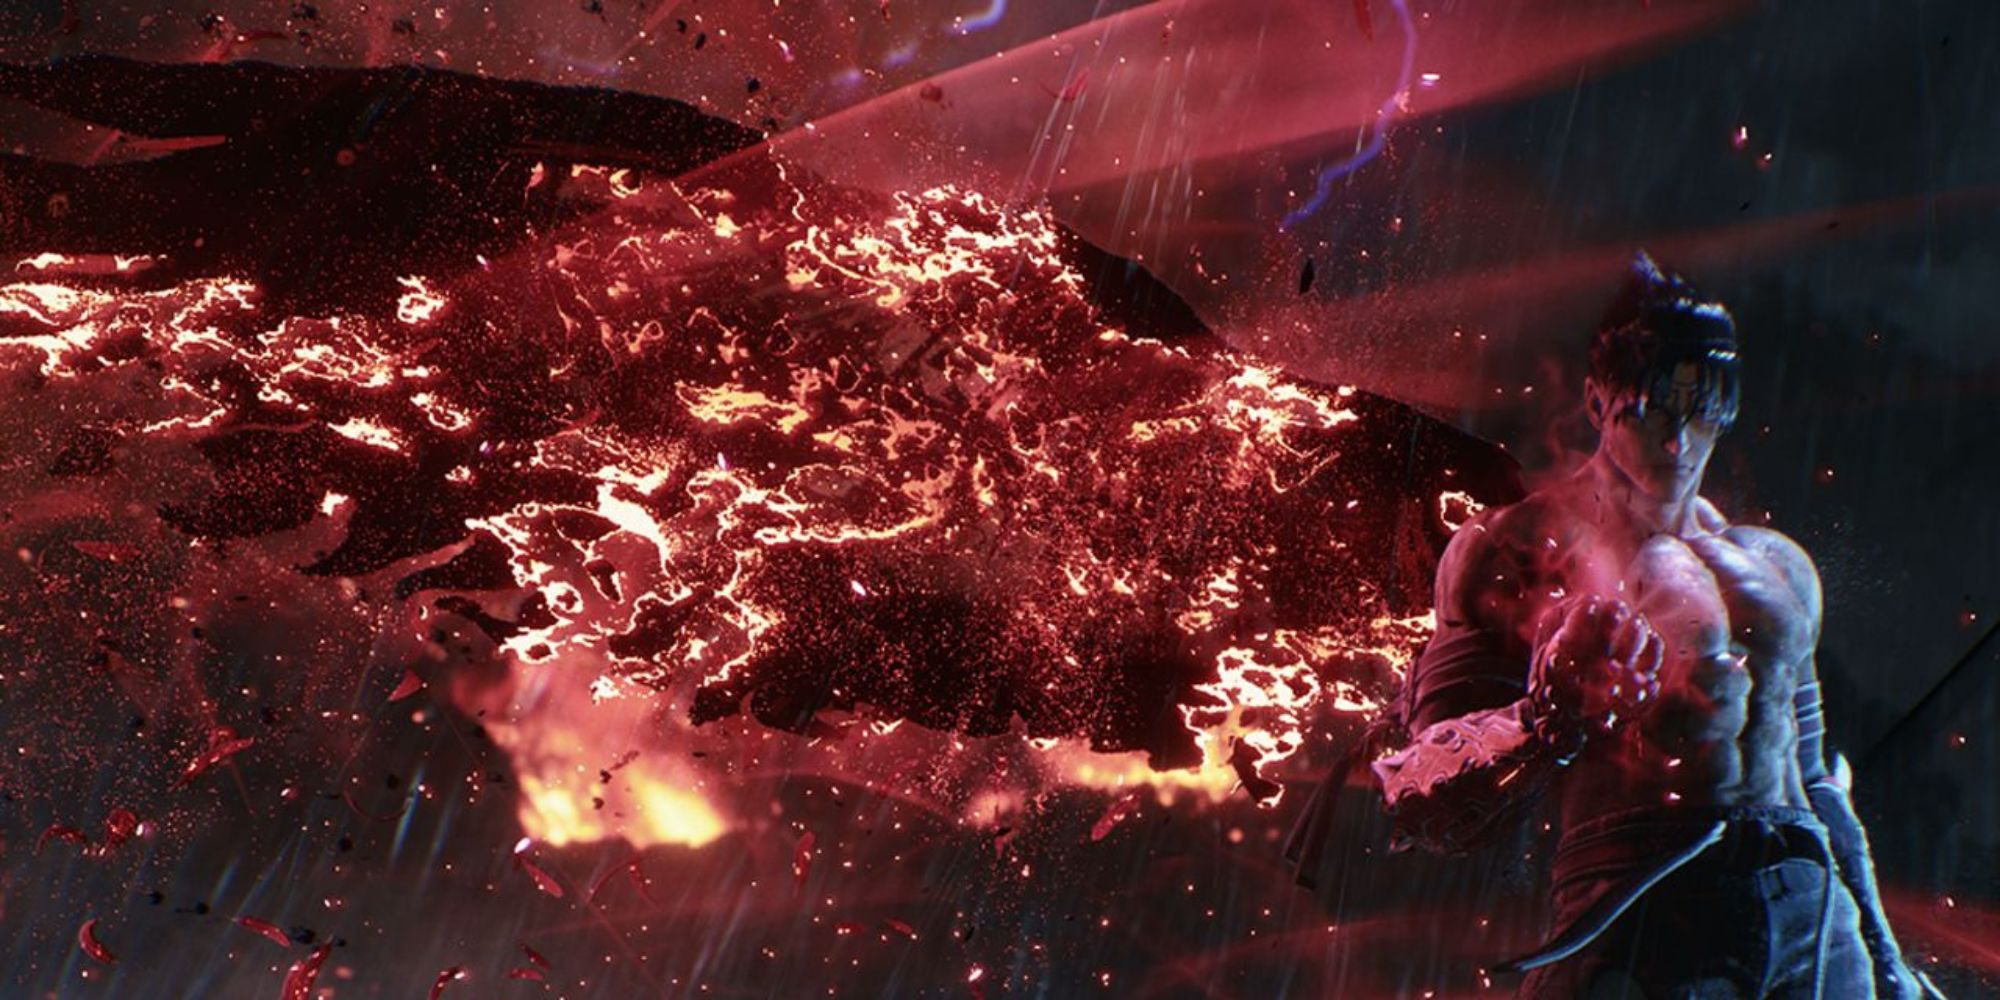 Image shows Tekken's Jin Kazama with a burning wing.